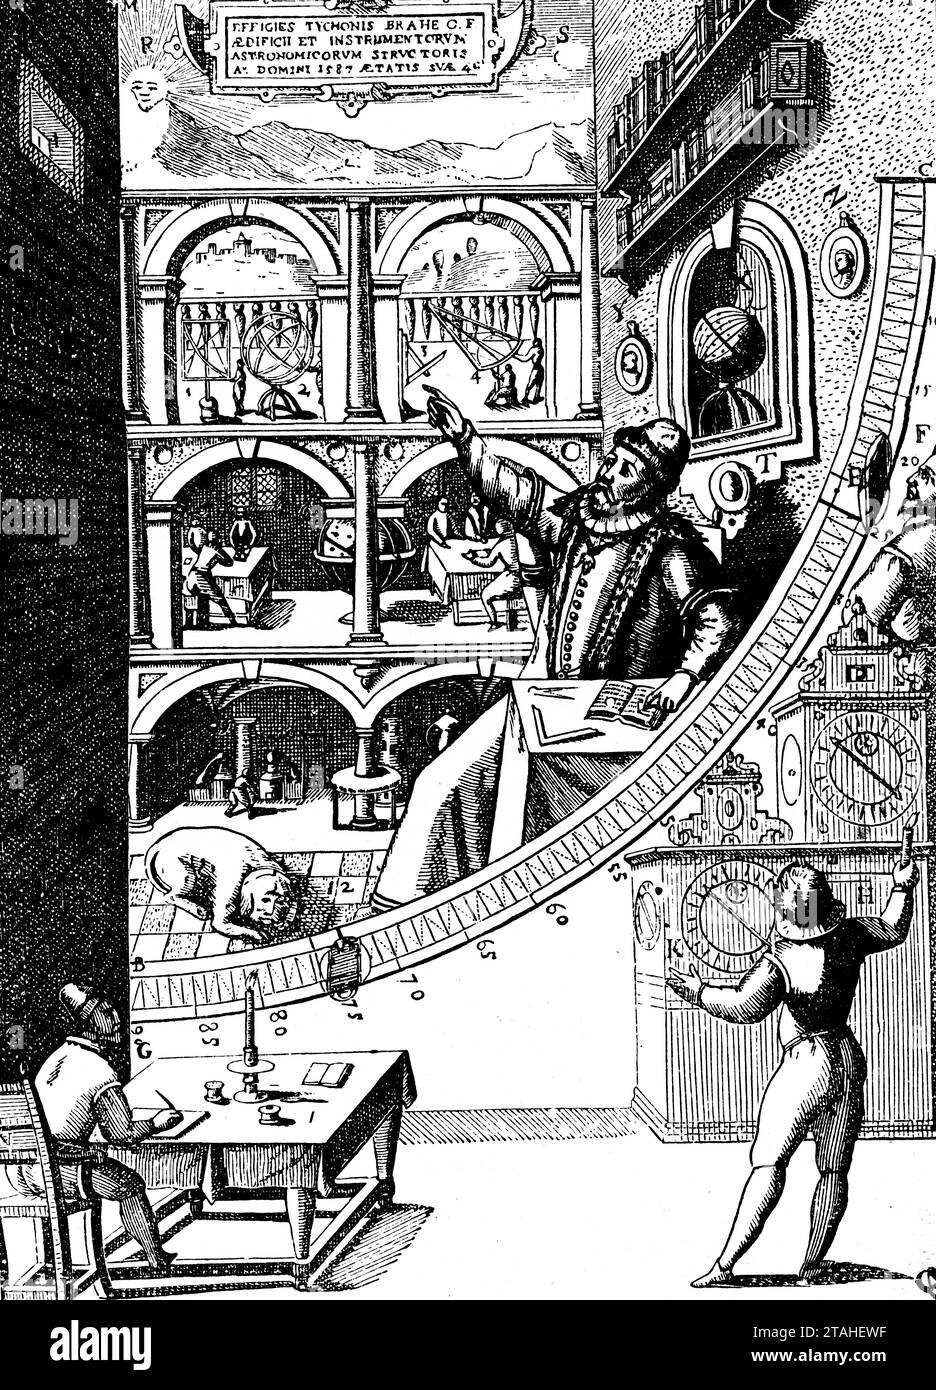 Quadrante murale di Tycho Brahe ('Quadrans muralis sive Tichonicus'), 1598. Il quadrante murale di Tycho Brahe nel suo osservatorio Uraniborg sull'isola di Hven. Illustrazione da "Astronomia Instauratae Mechanica", di Tycho Brahe (1546-1601), 1598. Foto Stock